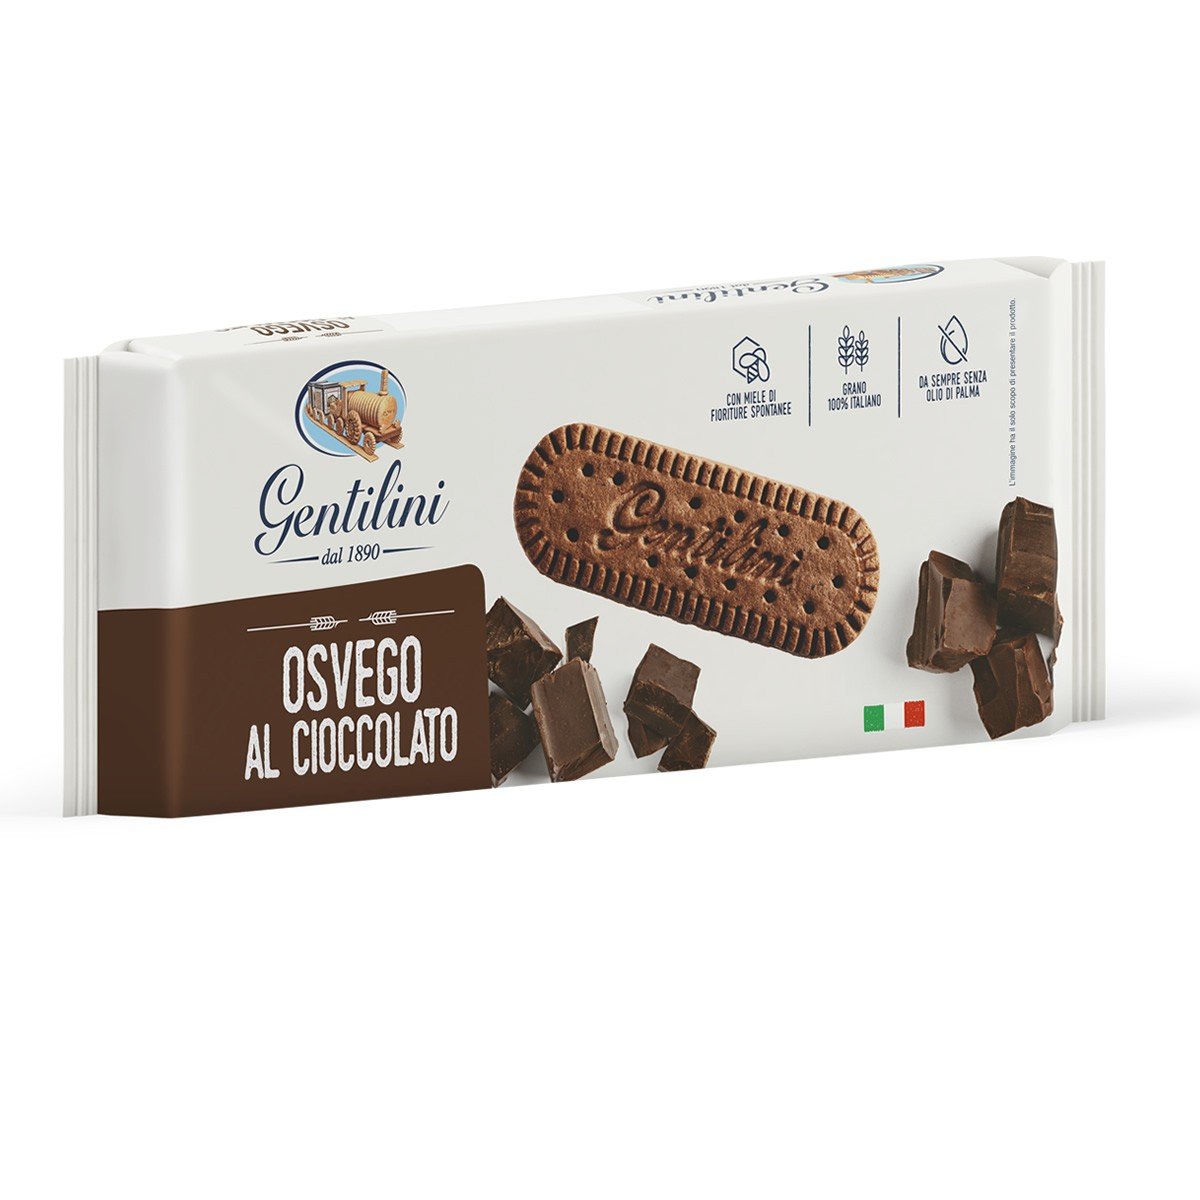 Osvego al cioccolato Biscotti Gentilini  250g 